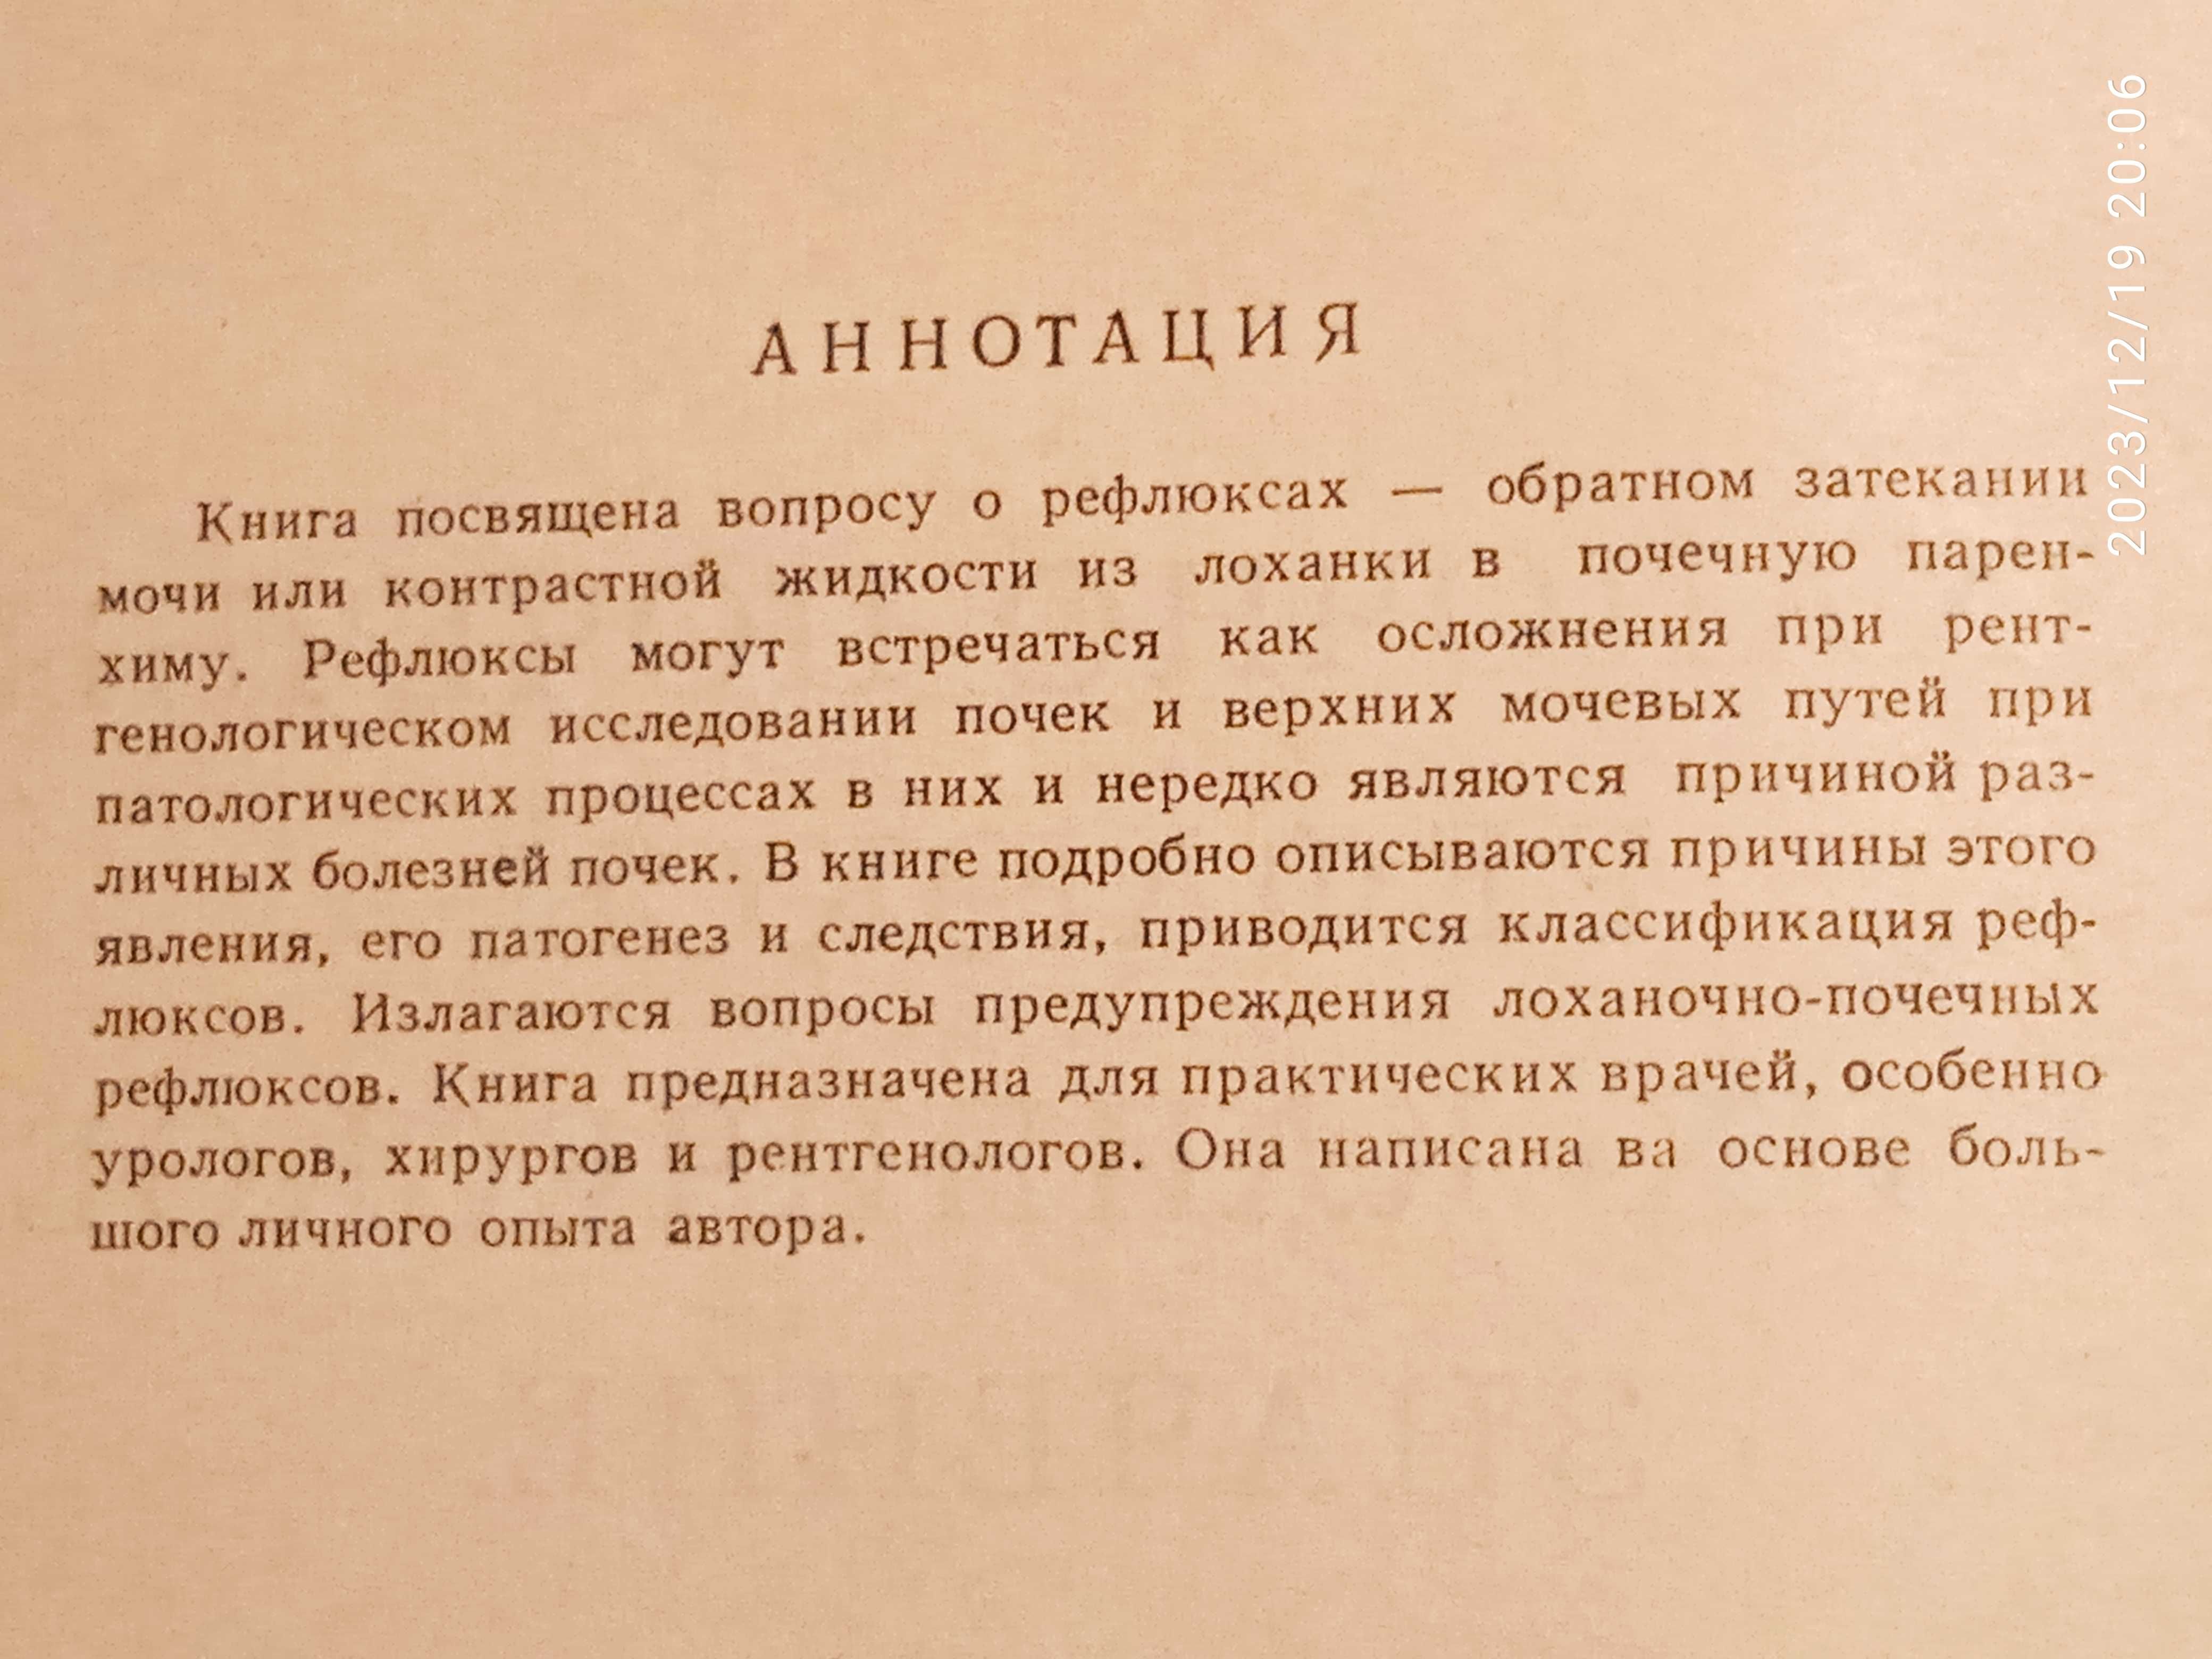 Пытель А.Я. "Лоханочно-почечные рефлюксы" 1959 год.